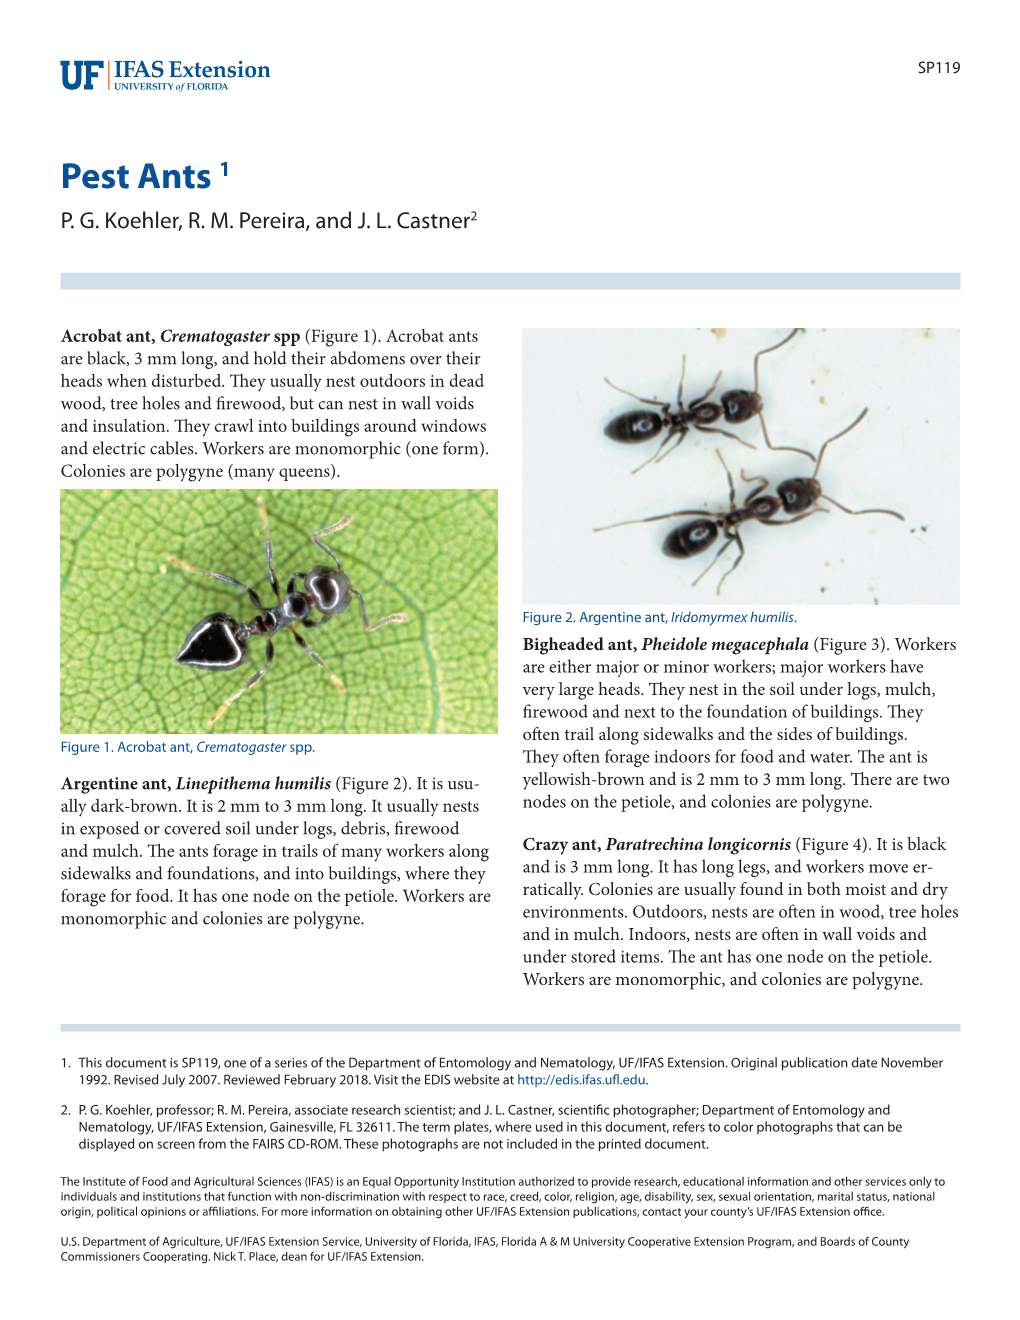 Pest Ants 1 P